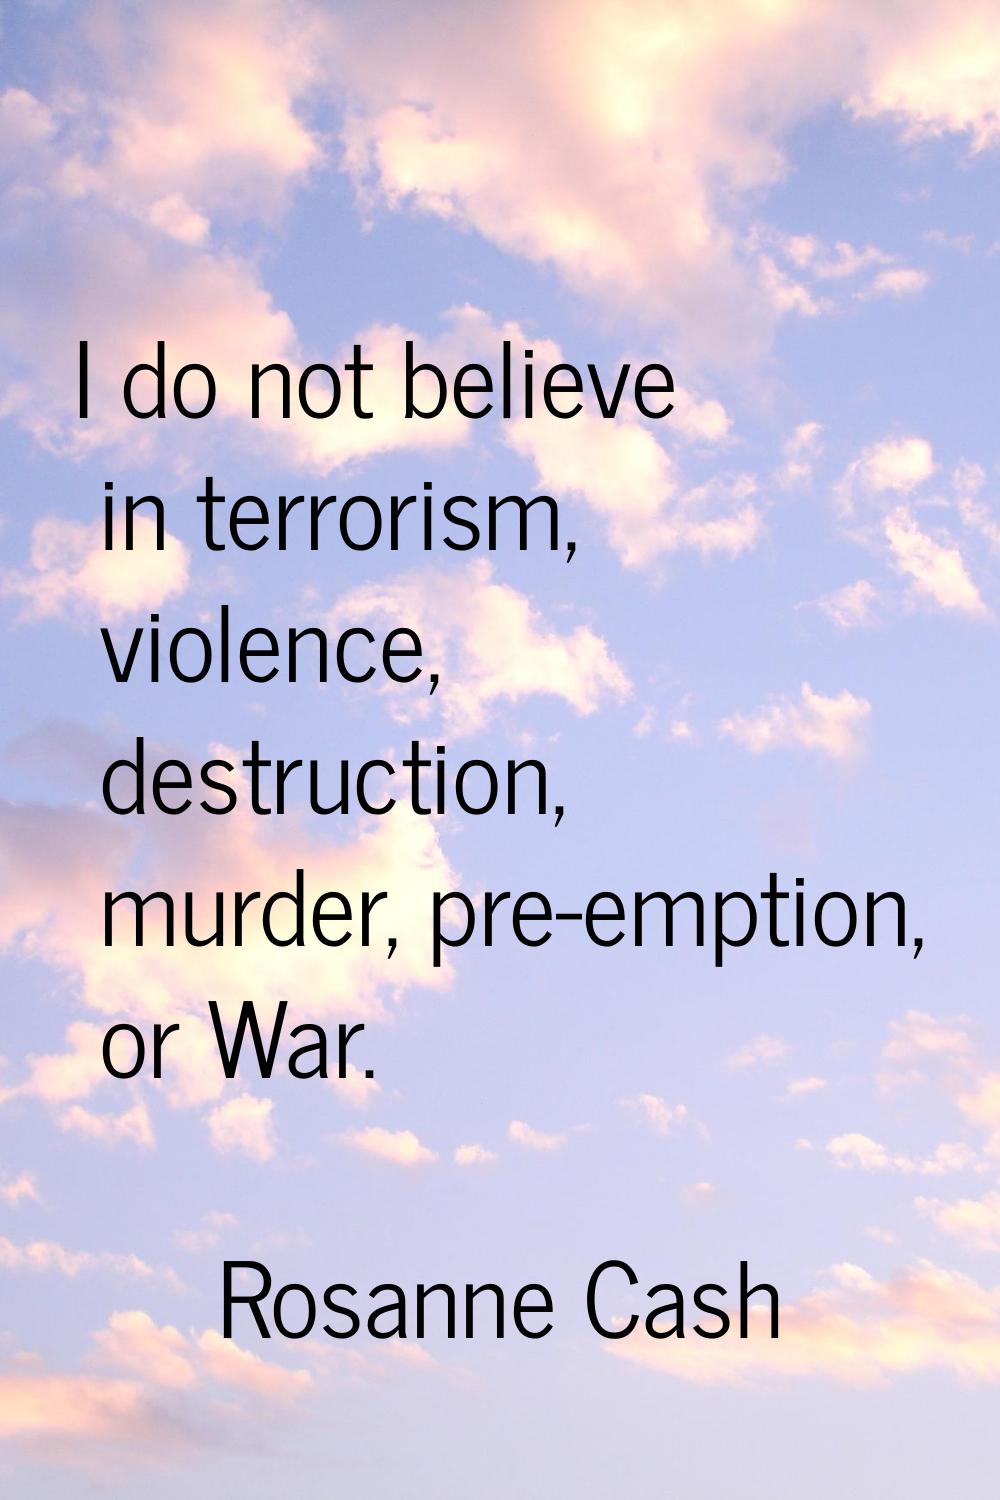 I do not believe in terrorism, violence, destruction, murder, pre-emption, or War.